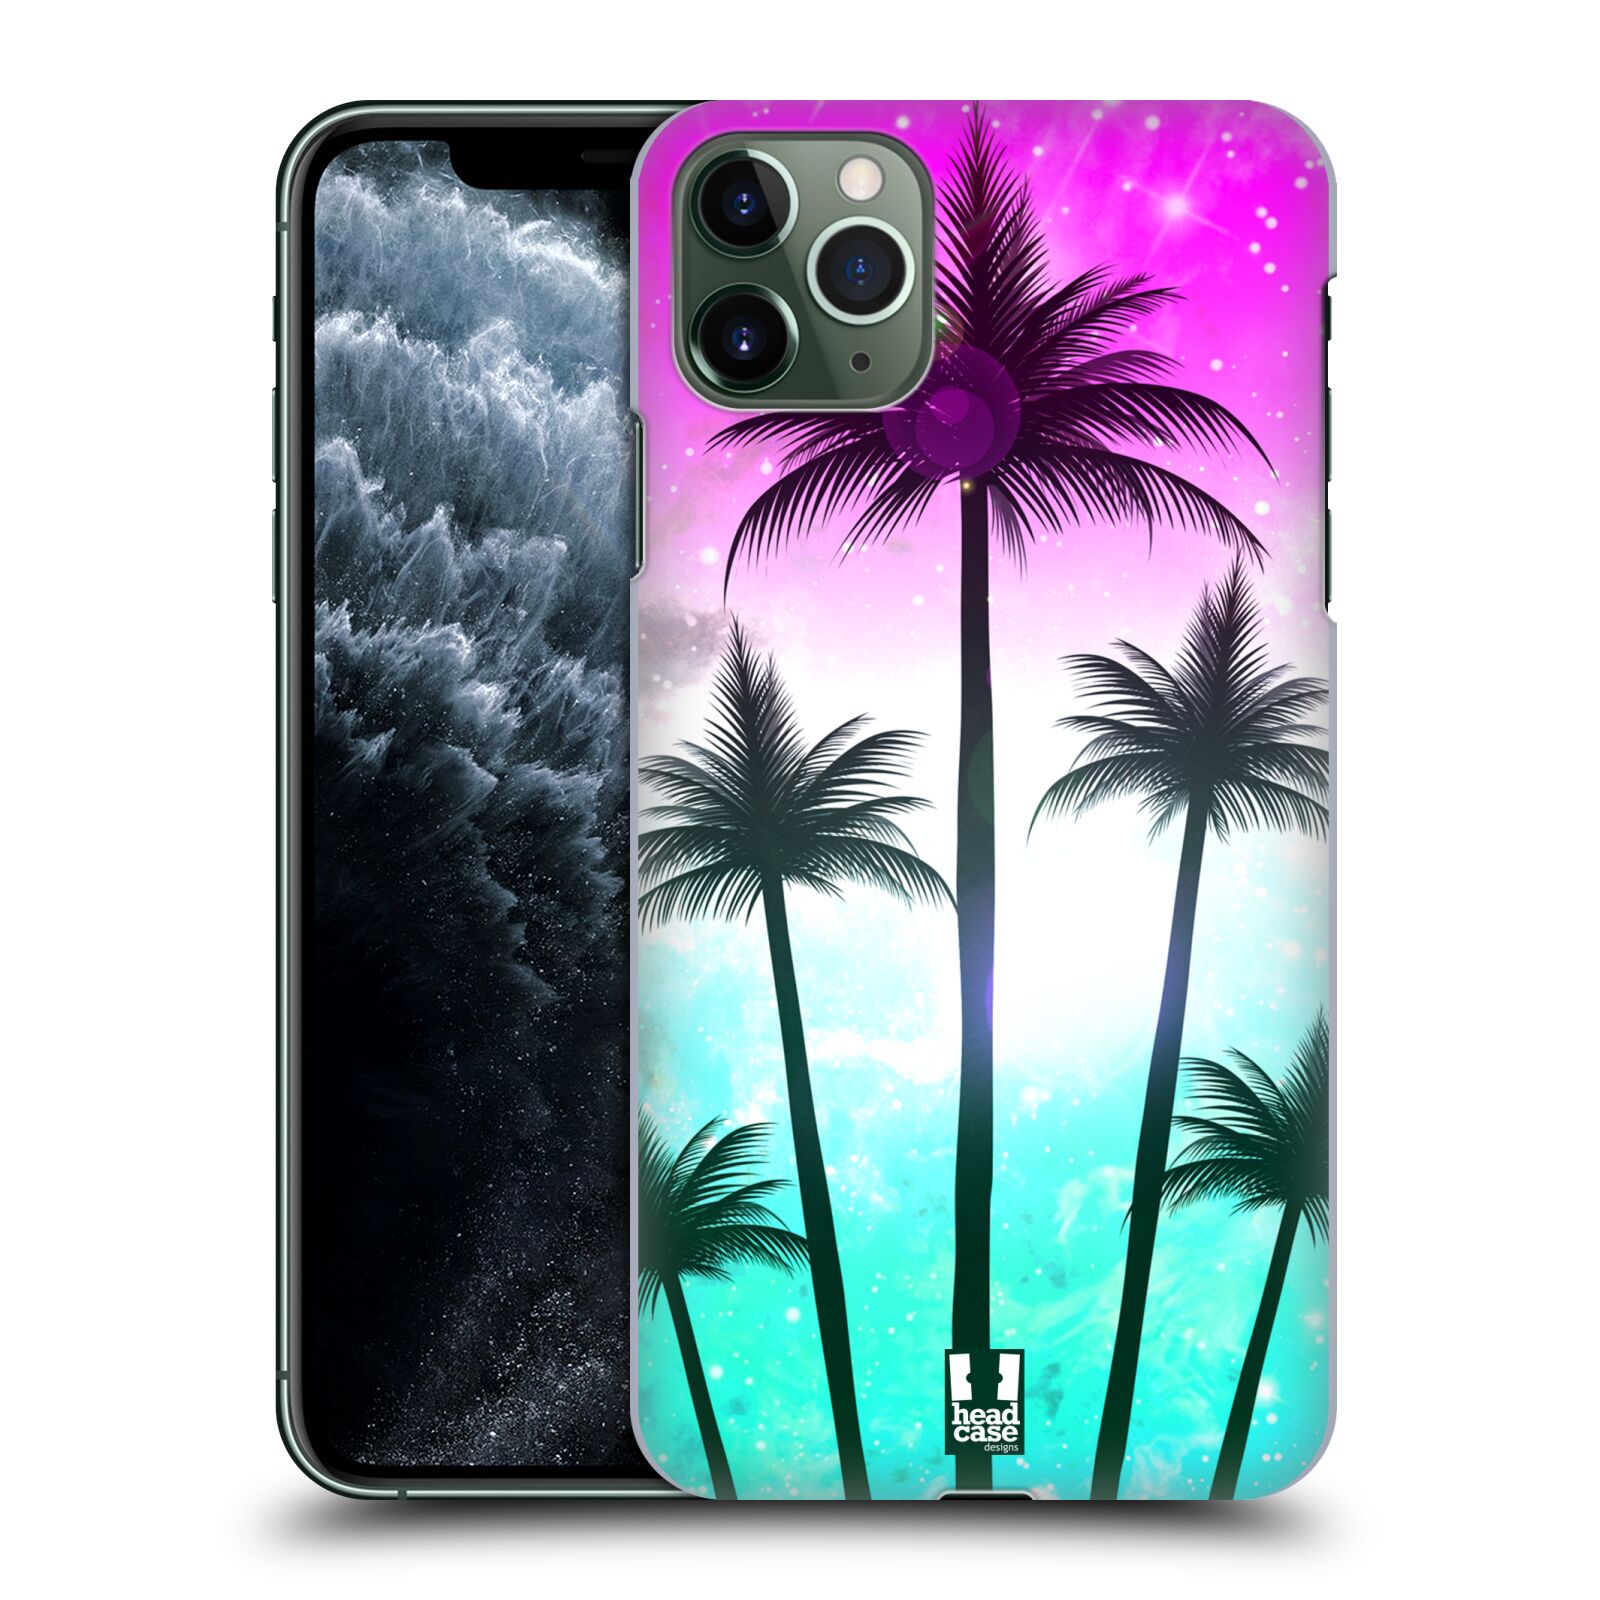 Pouzdro na mobil Apple Iphone 11 PRO MAX - HEAD CASE - vzor Kreslený motiv silueta moře a palmy RŮŽOVÁ A TYRKYS